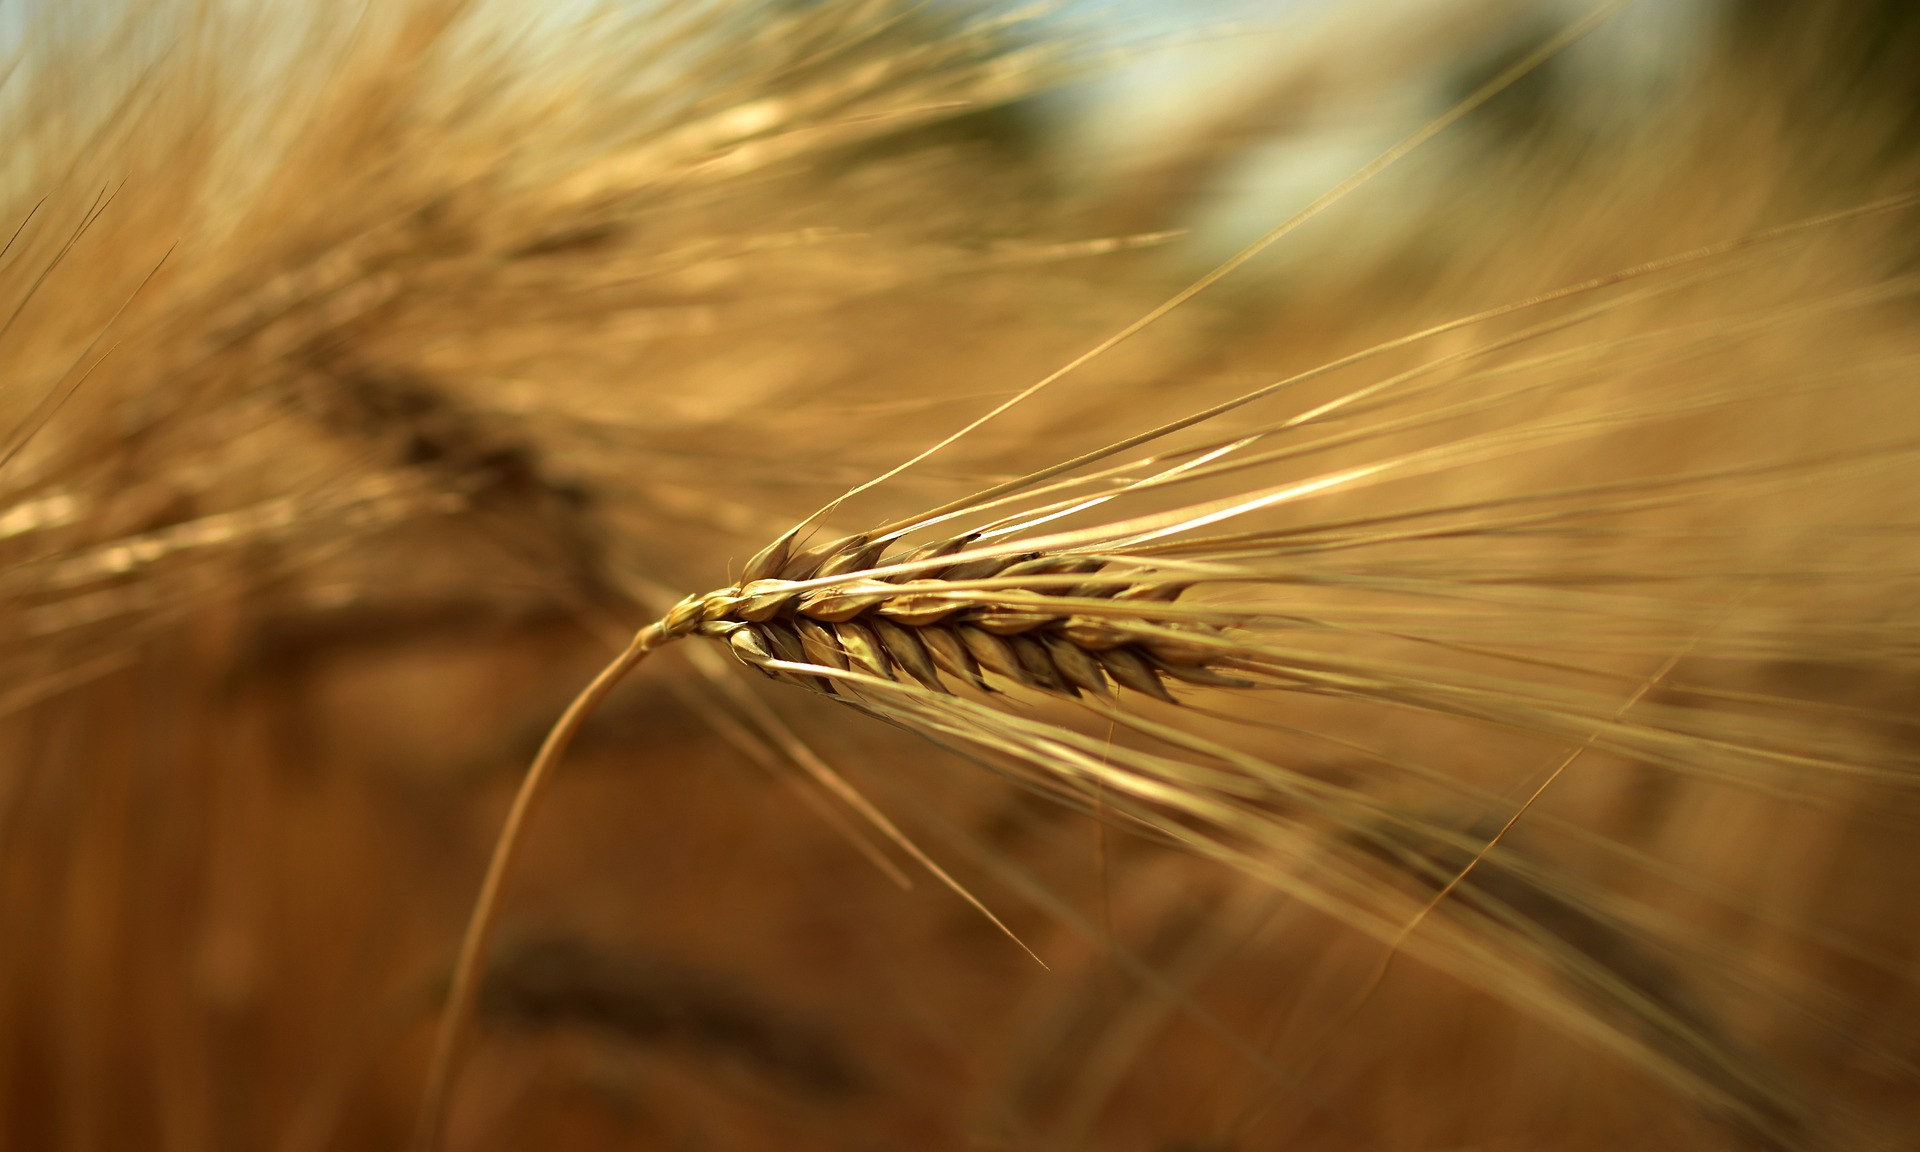 Genetik und Geschichte der Getreidearten waren ein zentrales Forschungsfeld der Forscherin (© Peggychoucair, Pixabay)